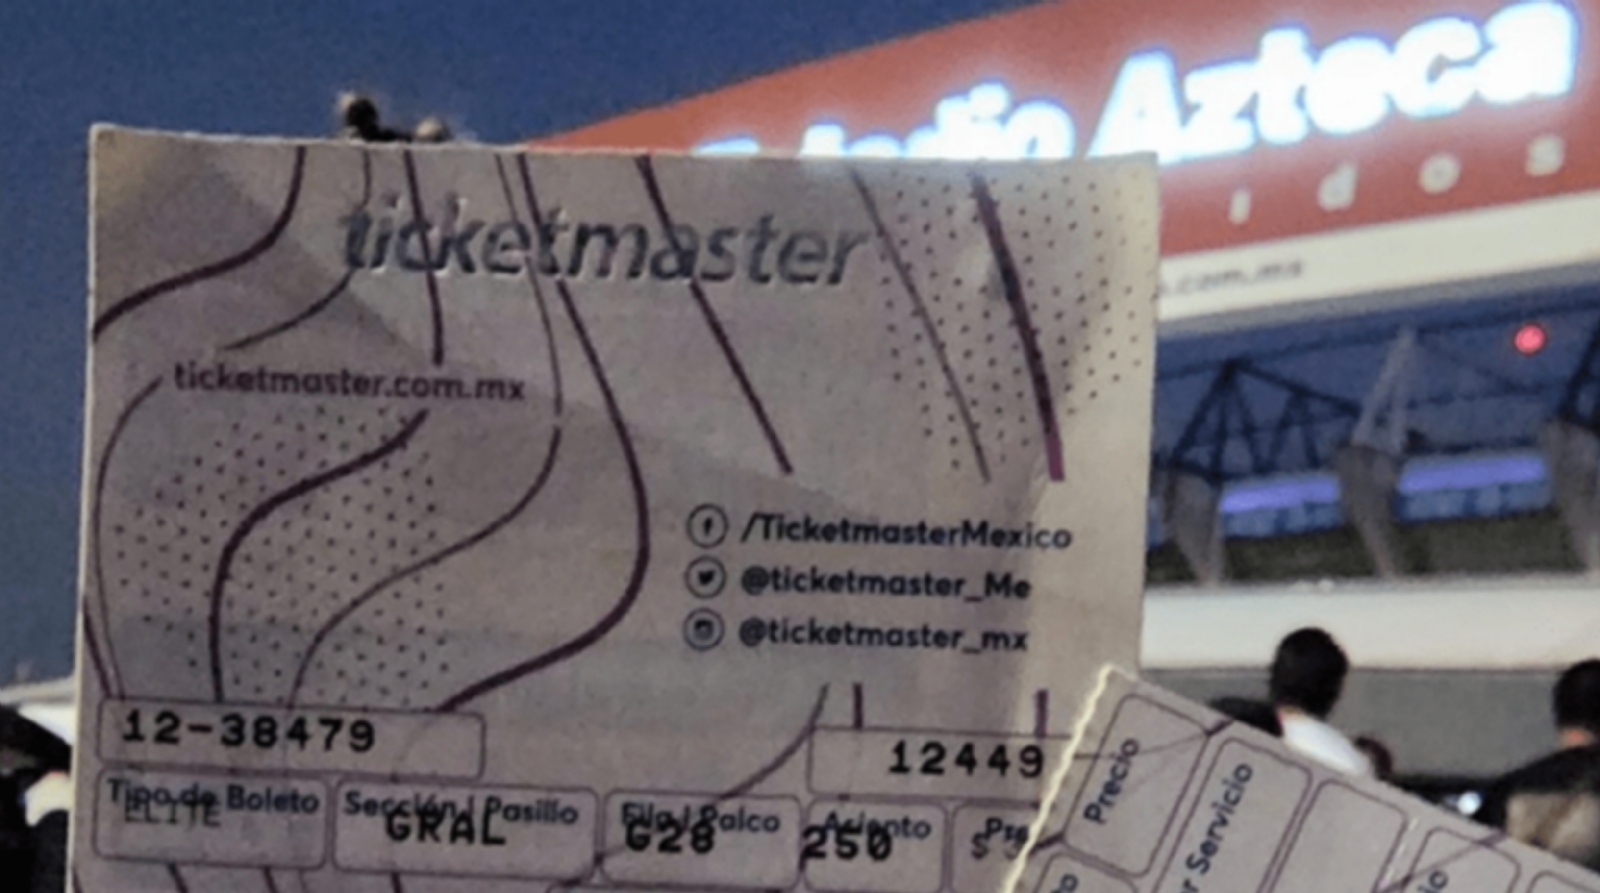 Ticketmaster reembolsó más de 18 millones de pesos por concierto de Bad Bunny